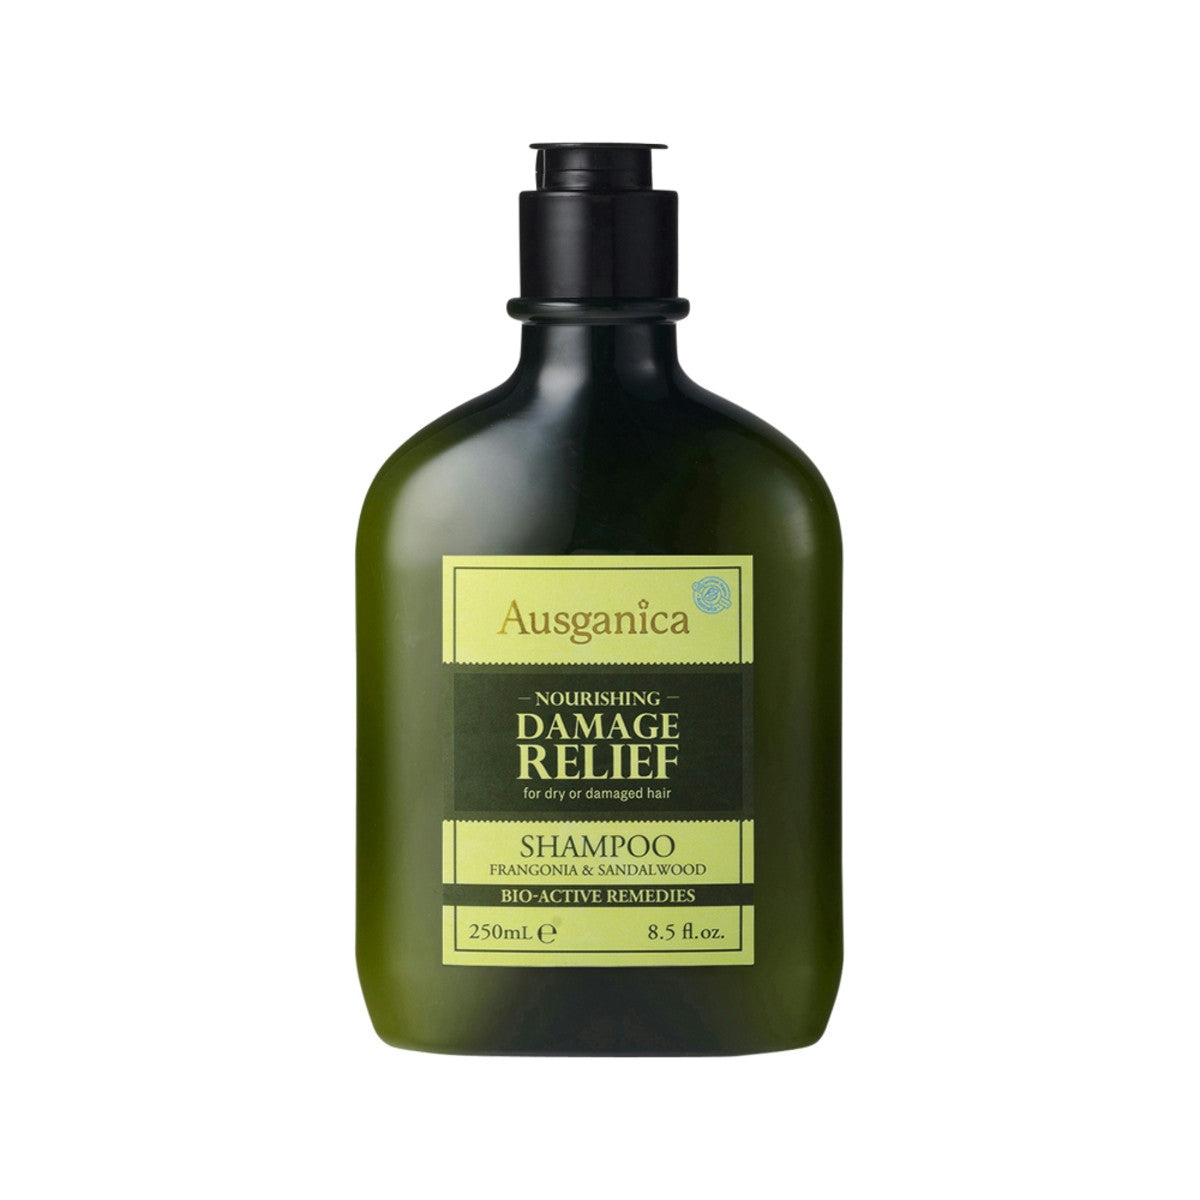 image of Ausganica Organic Nourishing Damage Relief Shampoo - Fragonia & Sandalwood 250ml on white background